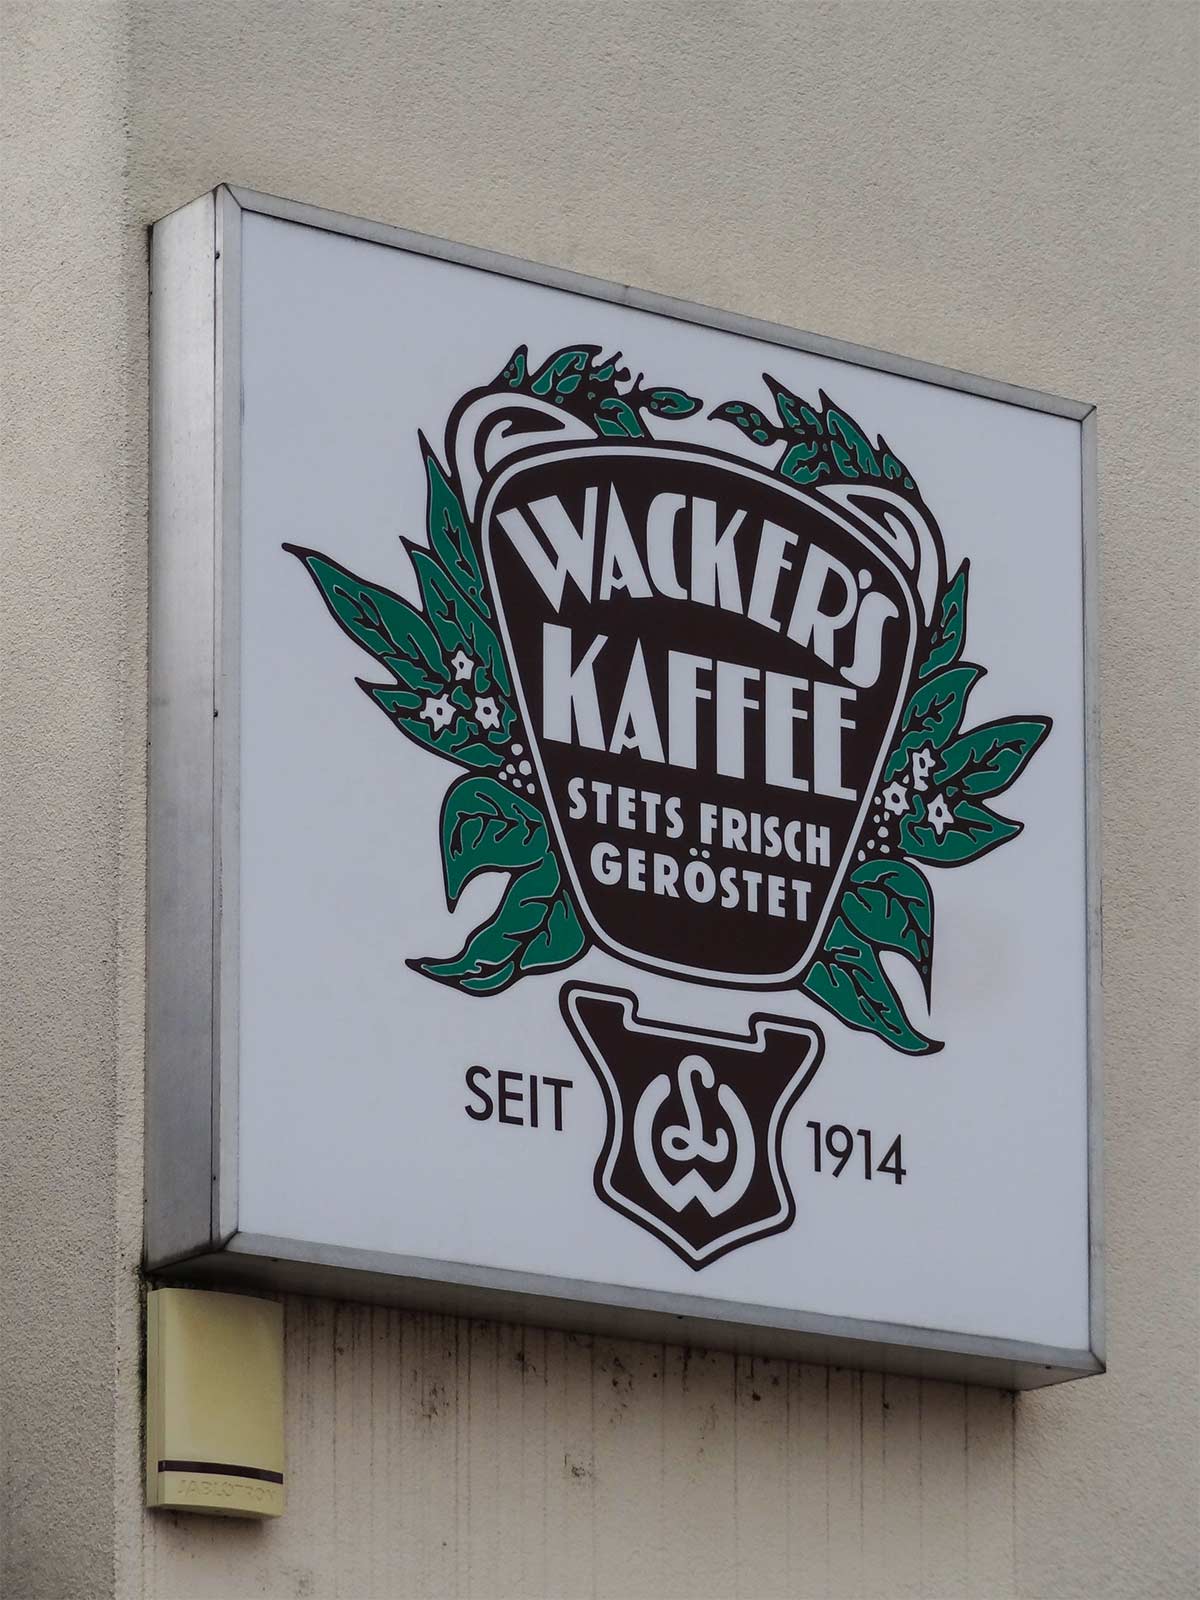 Typografie, Schilder und Logos in Frankfurt - Wacker's Kaffee